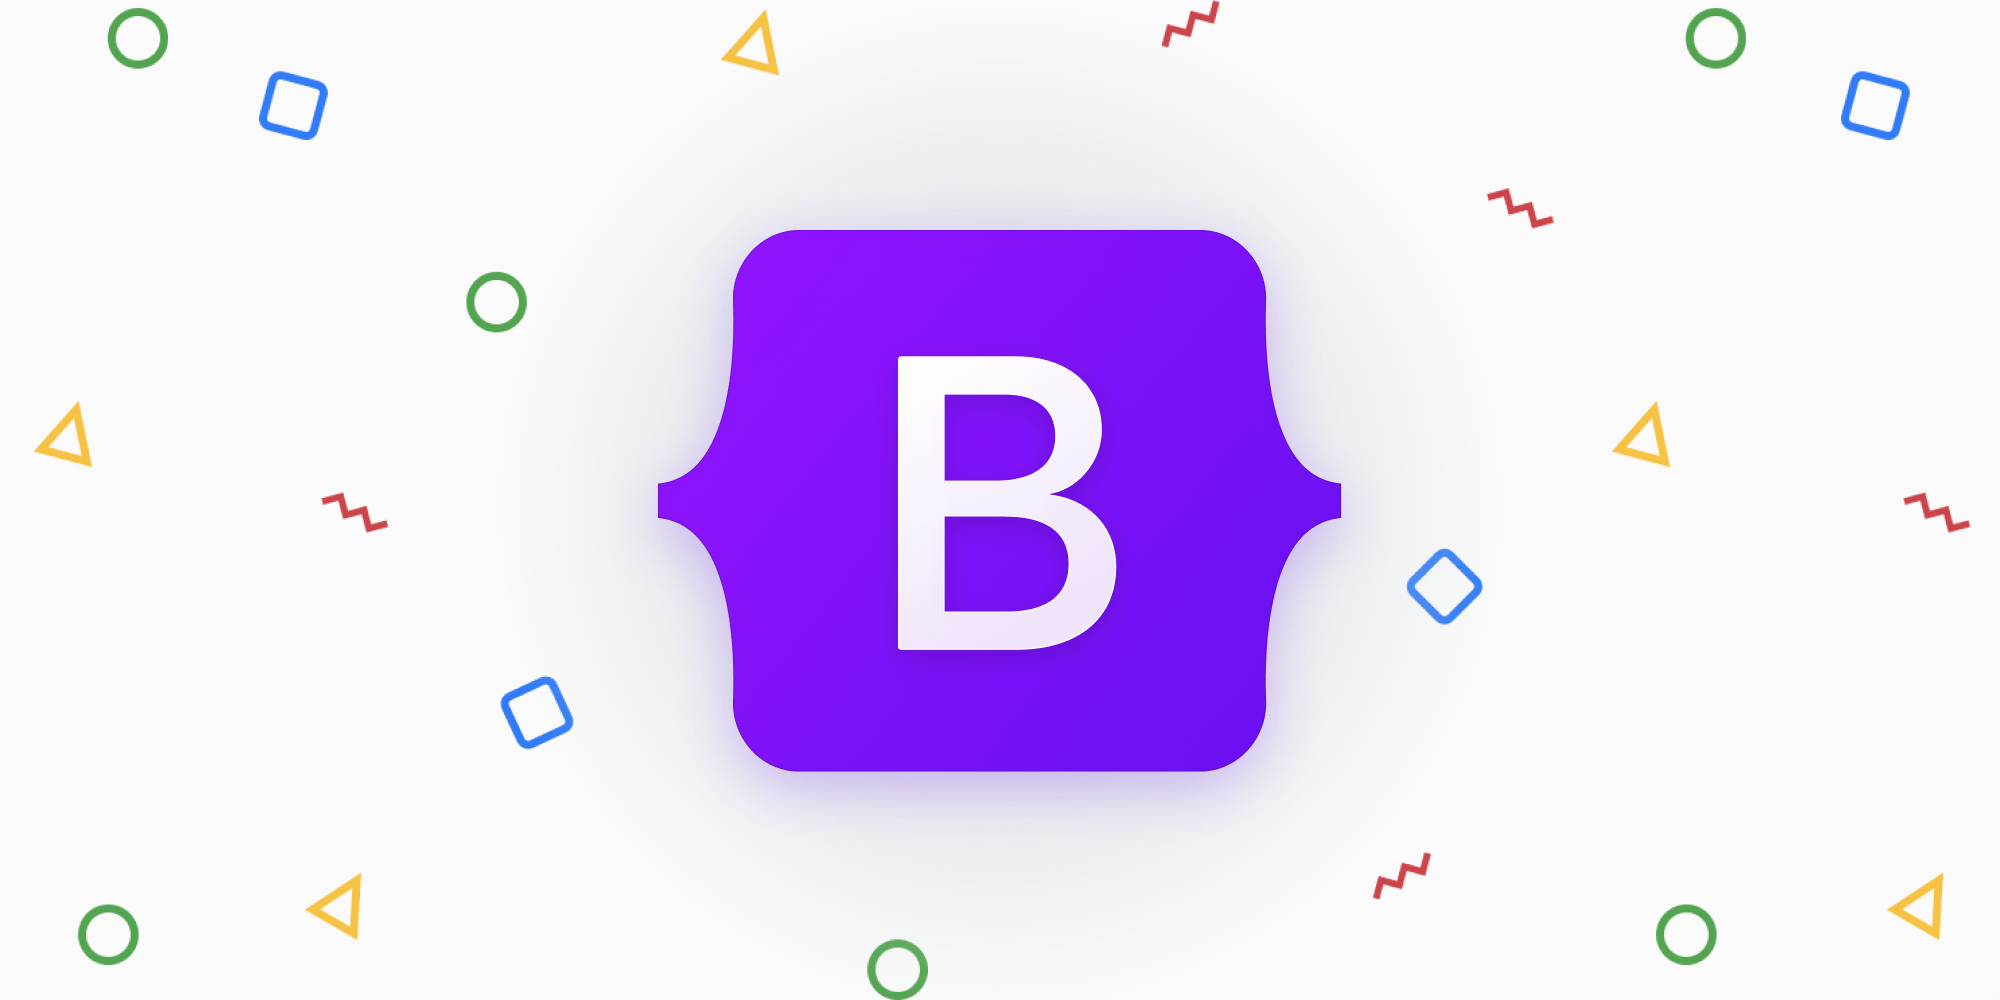 Bootstrap 5 rilasciato: tutte le novità